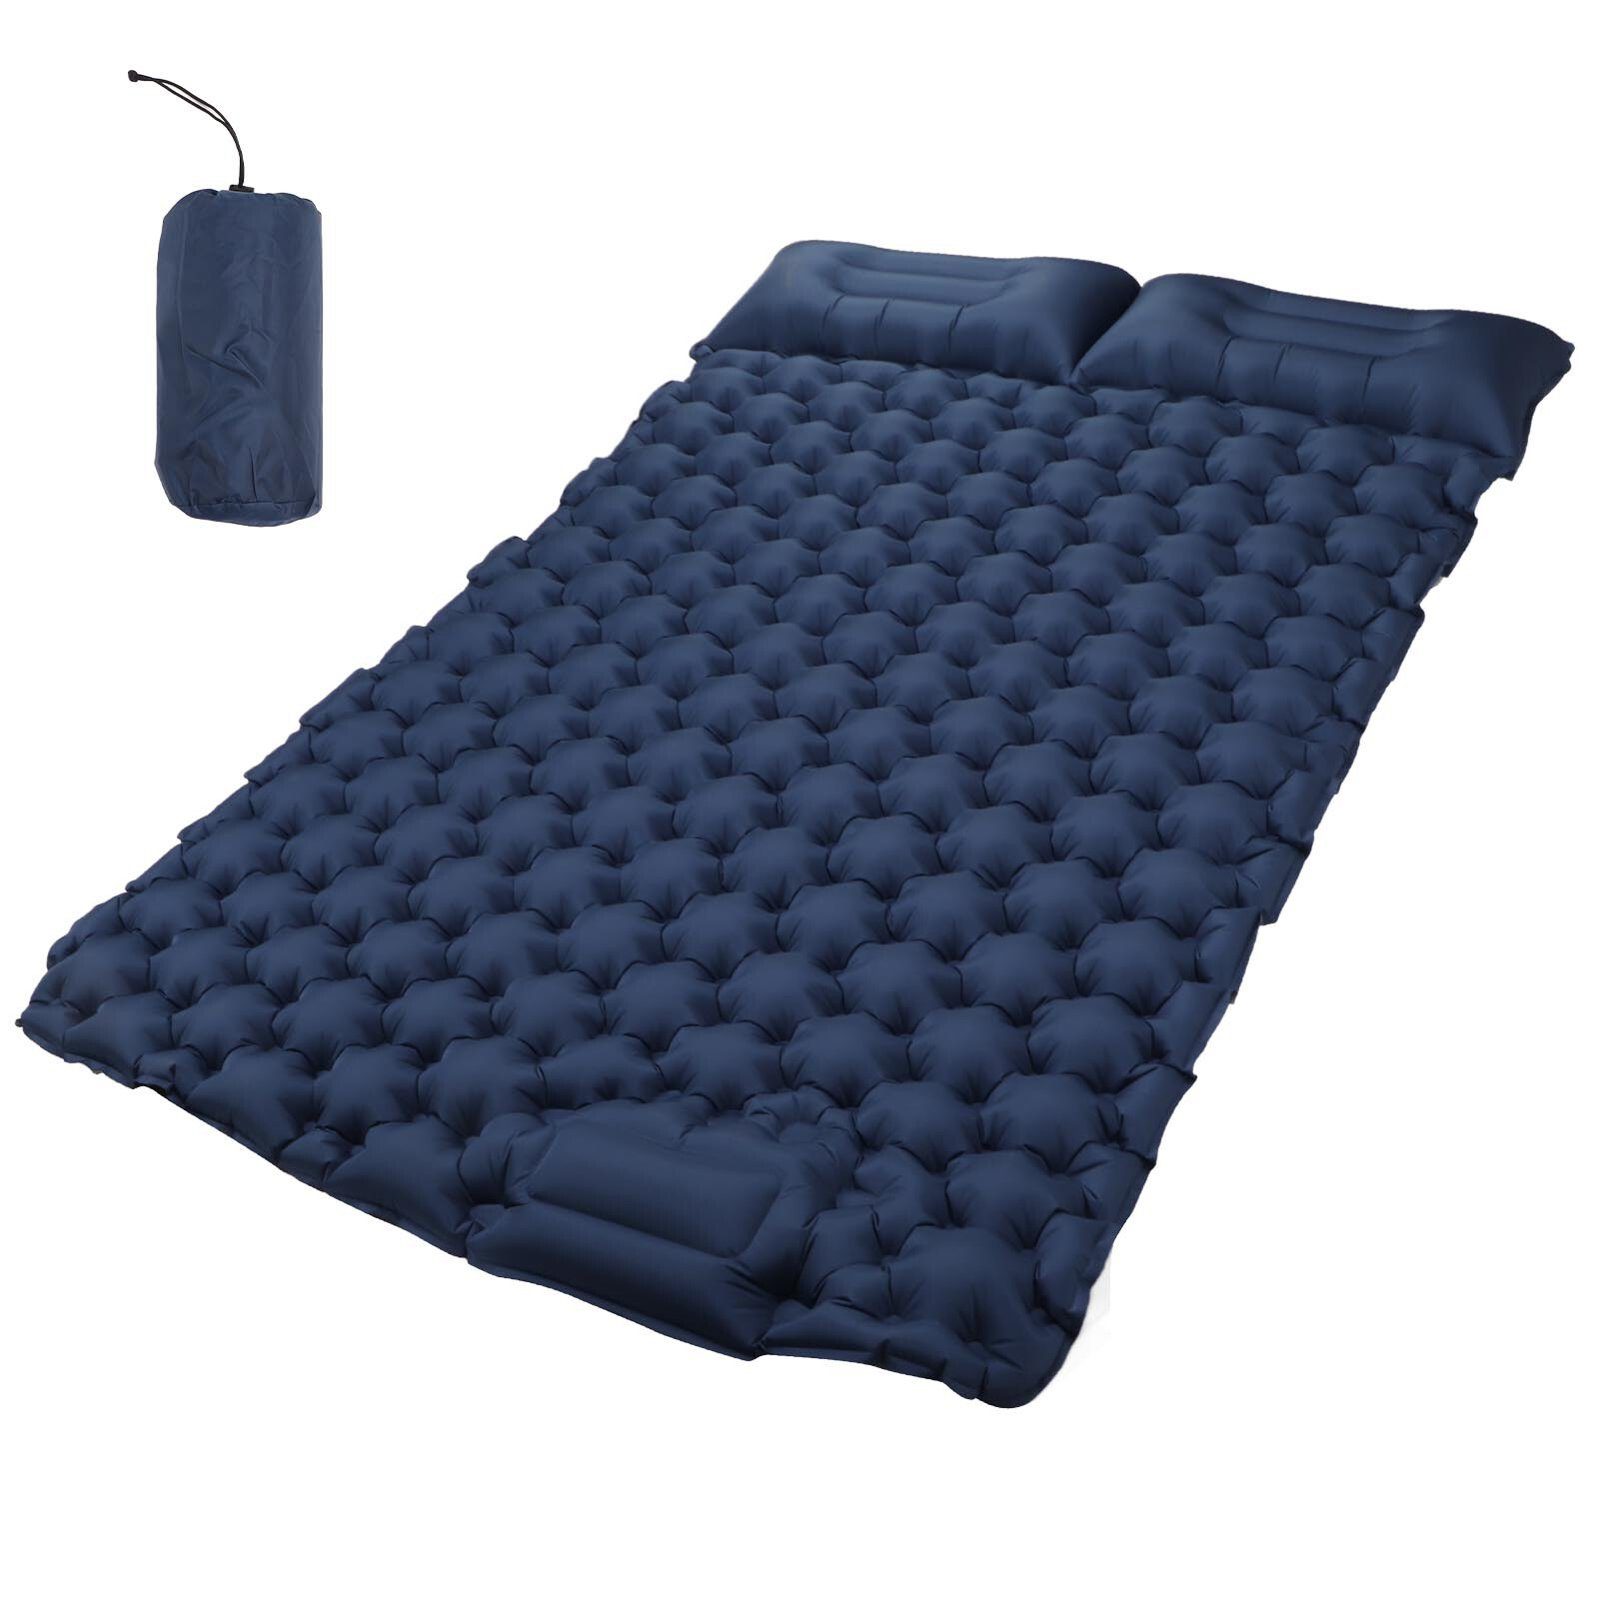 FUROKOY Luftbett Camping feuchtigkeitsdichte Luftmatratze mit Kissen, marineblau, , (leichte Trage aufblasbare Matratze doppelt), Nickerchen Lagerung aufblasbare Matratze